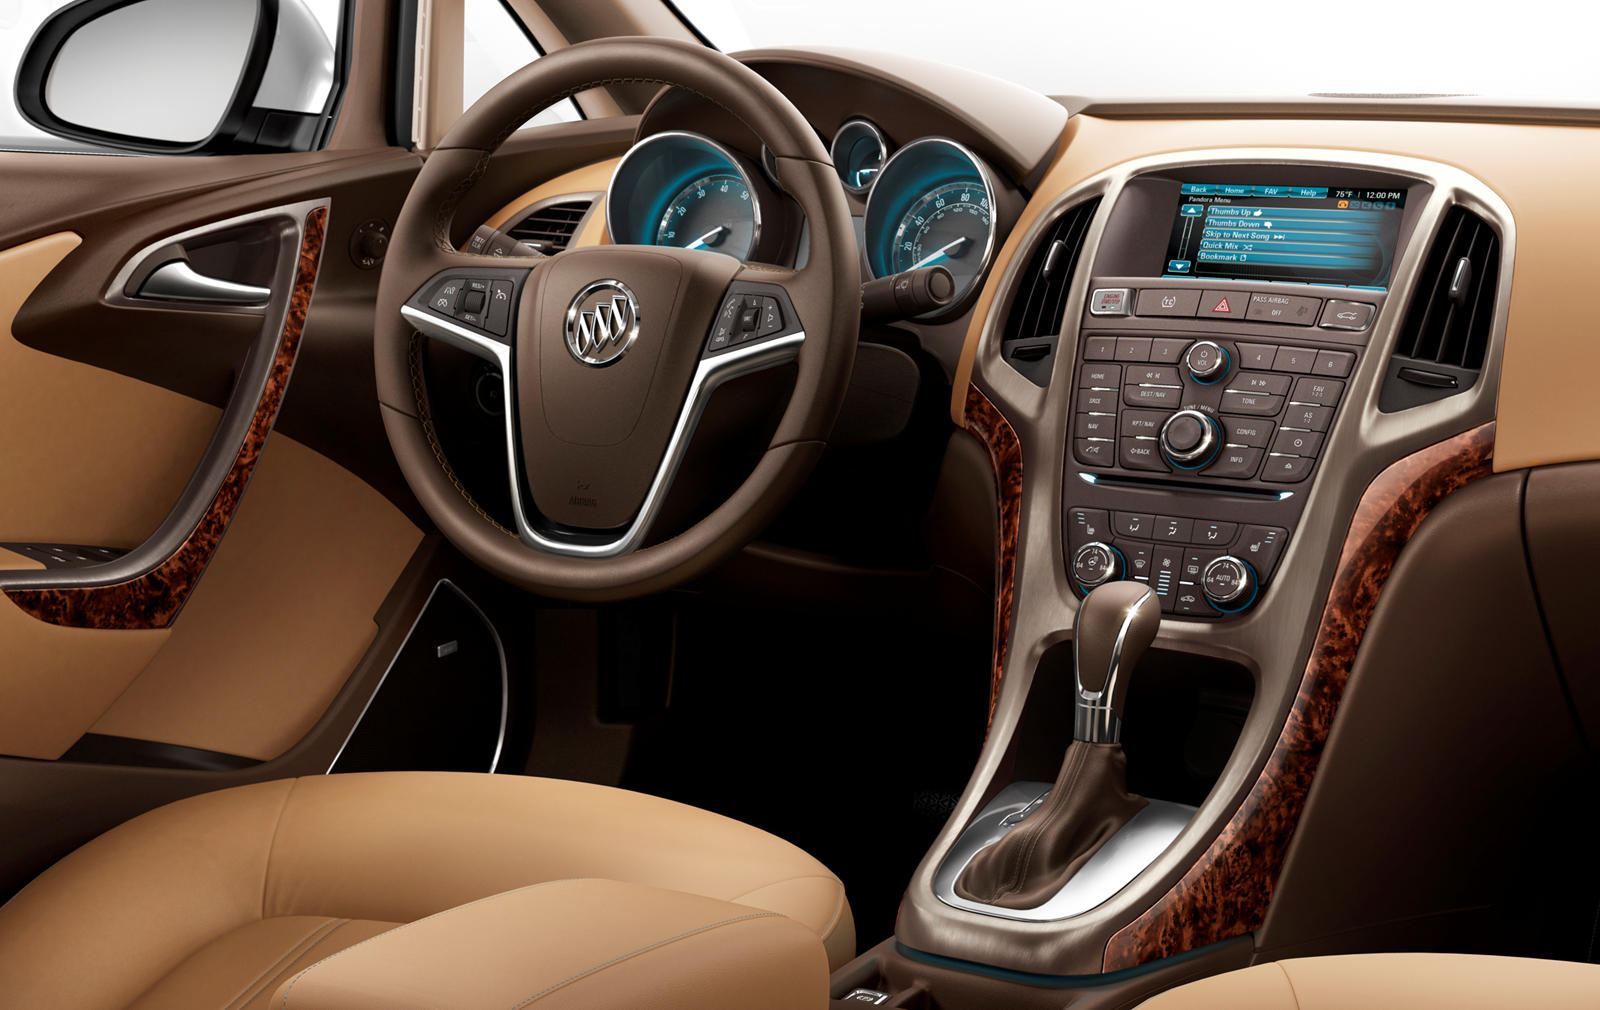 2013 Buick Verano Interior Photos | CarBuzz